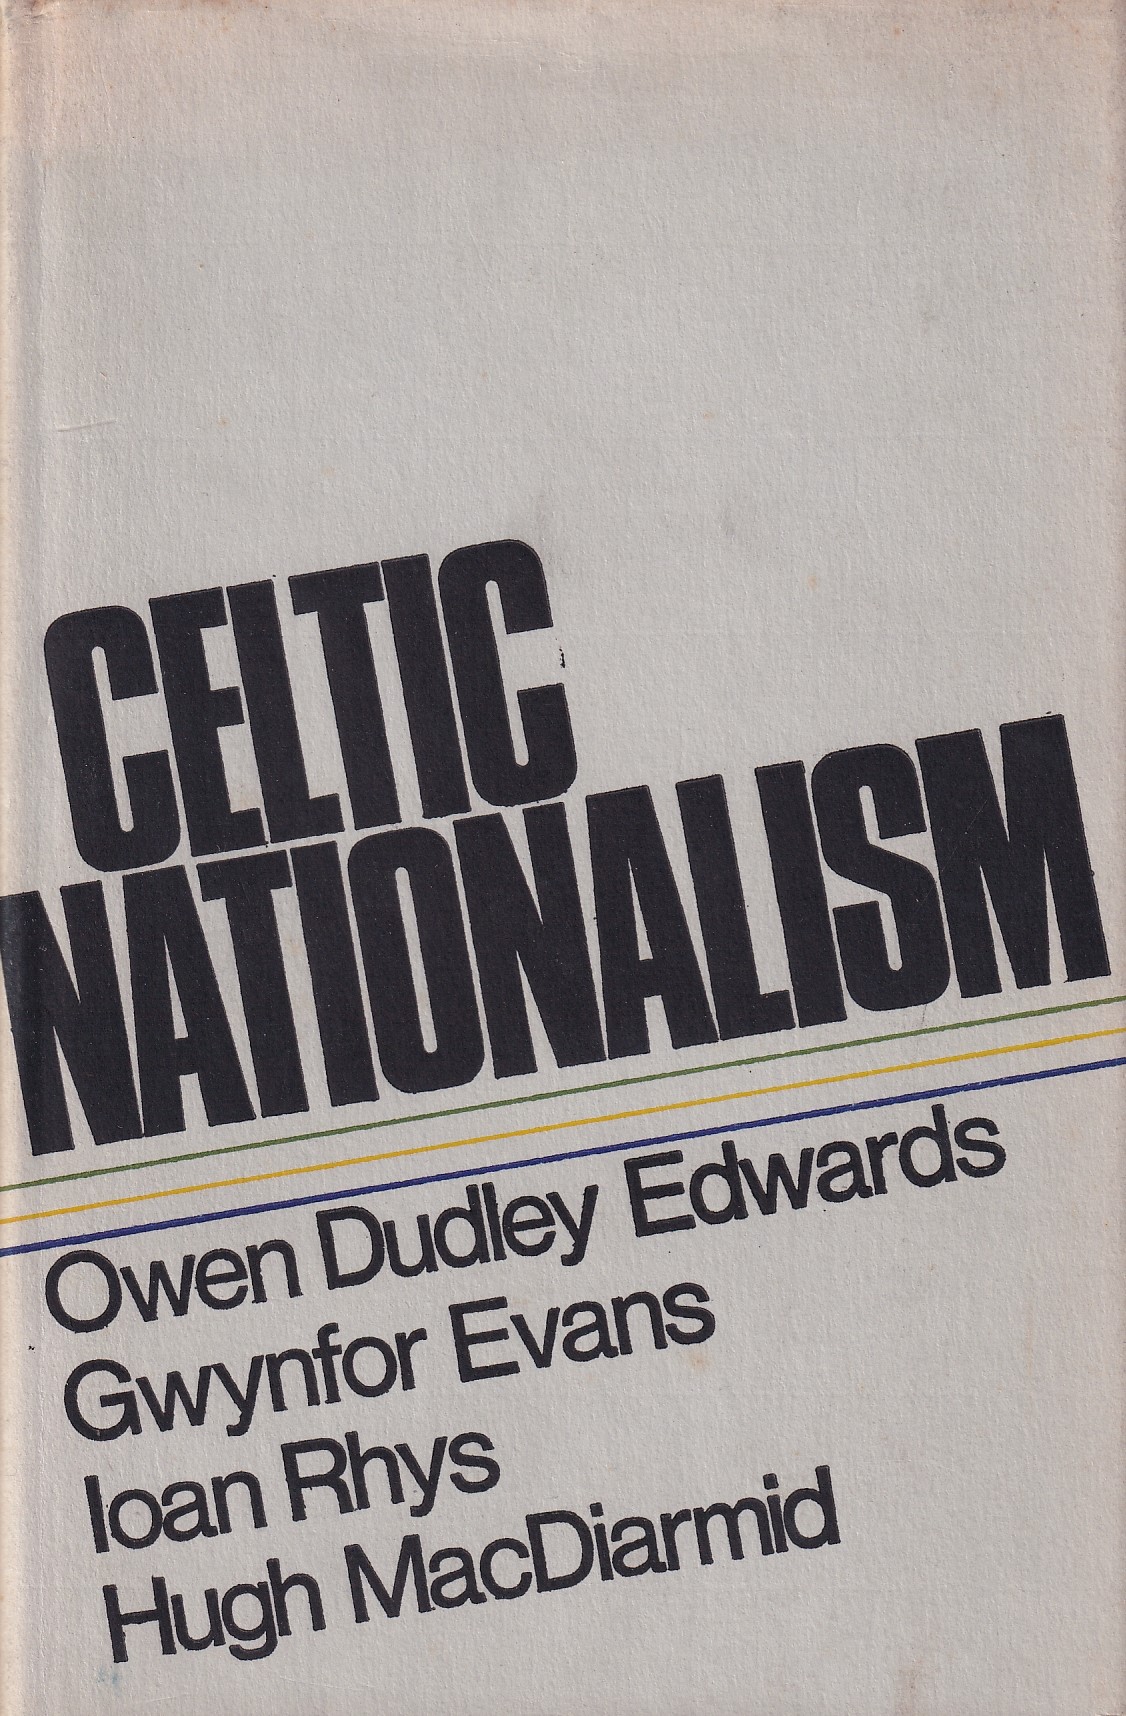 Celtic Nationalism | Owen Dudley Edwards, Gwynfor Evans, Iaon Rhys & Hugh MacDiarmid | Charlie Byrne's